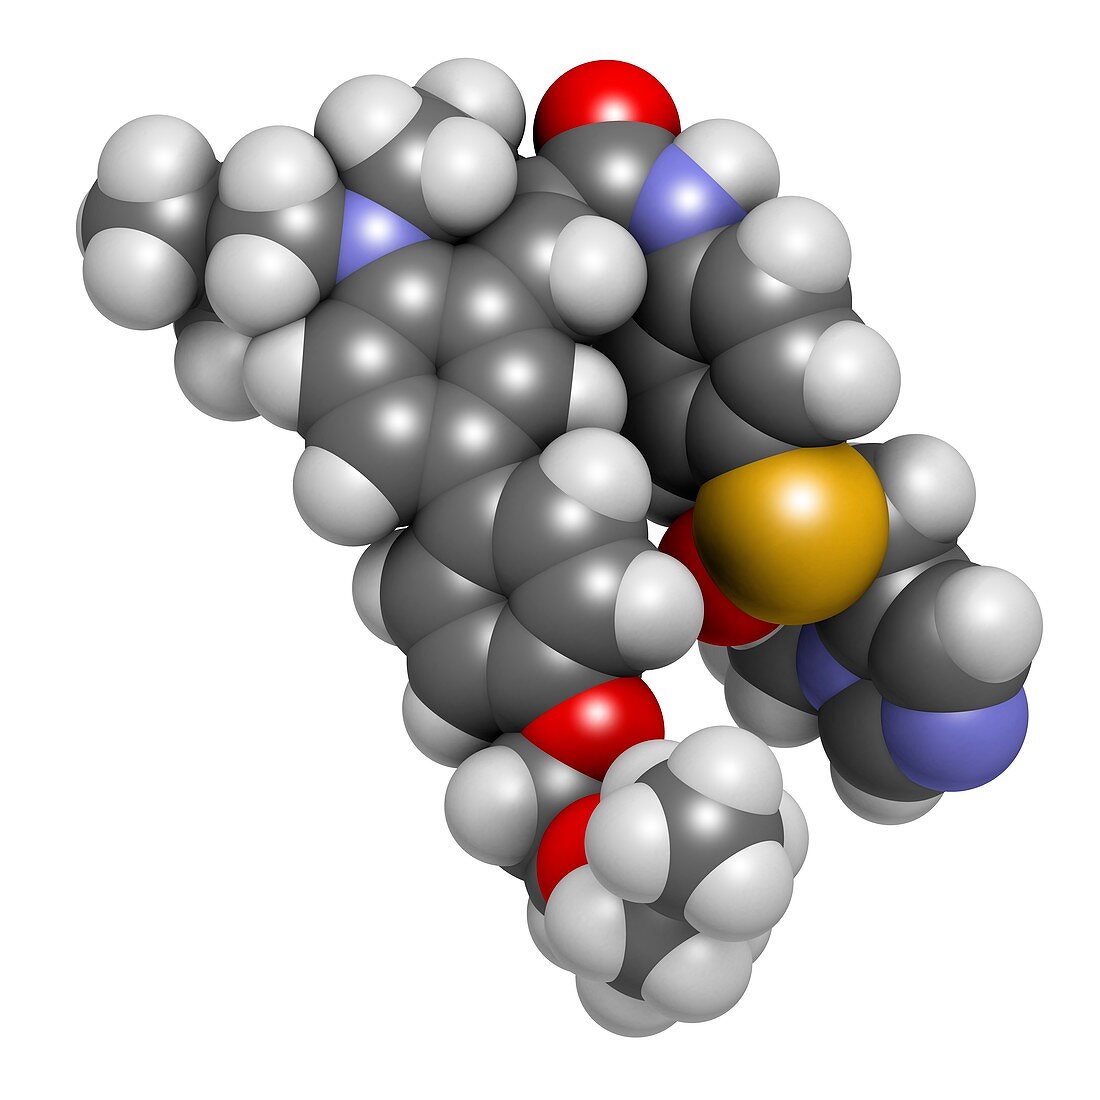 Cenicriviroc HIV drug molecule